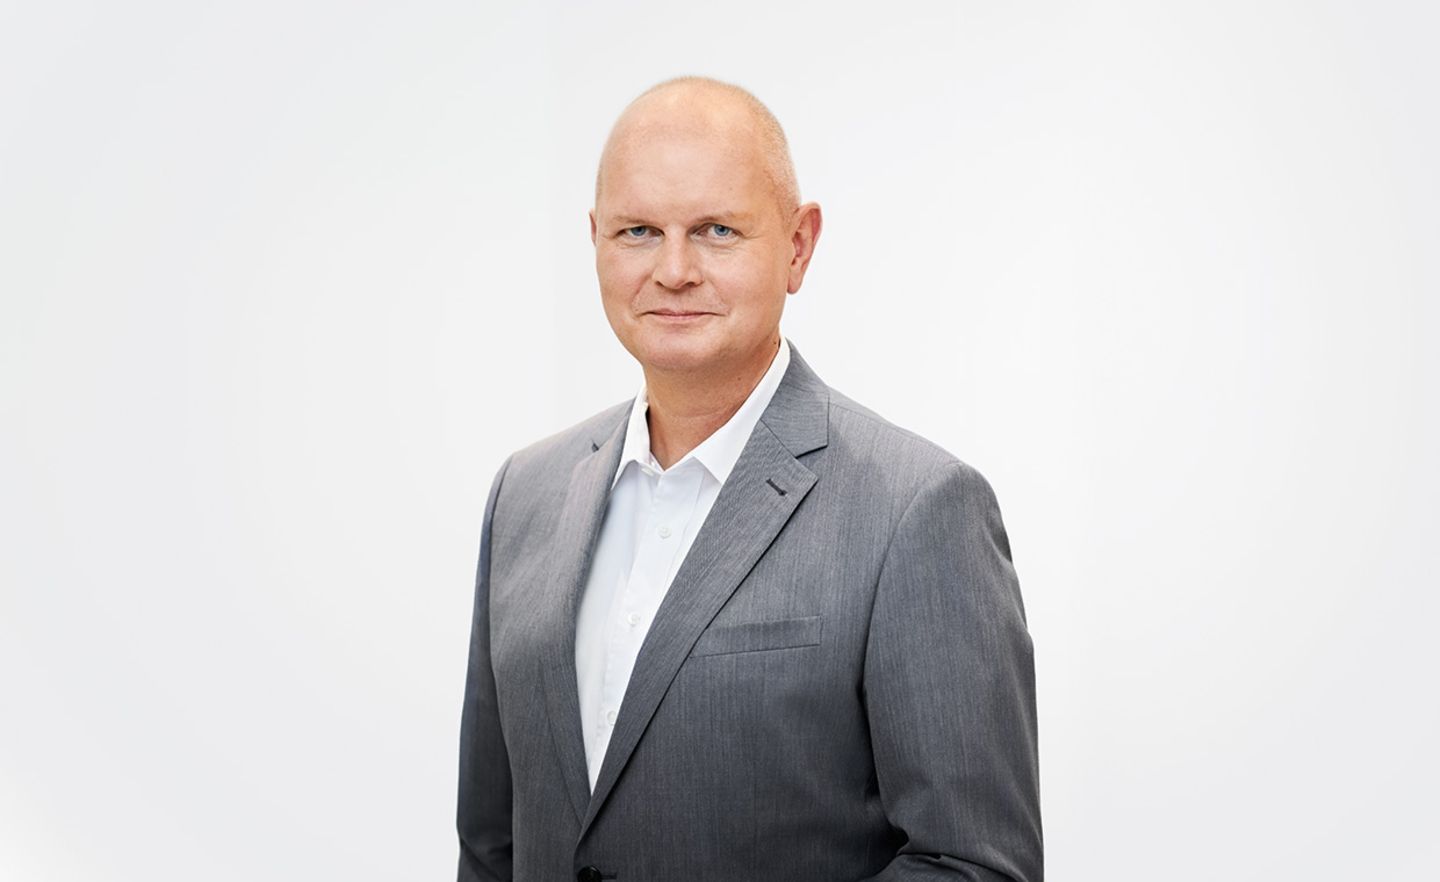 Metro-Chef Olaf Koch steht wegen der Kursentwicklung der Metro-Aktie unter Druck